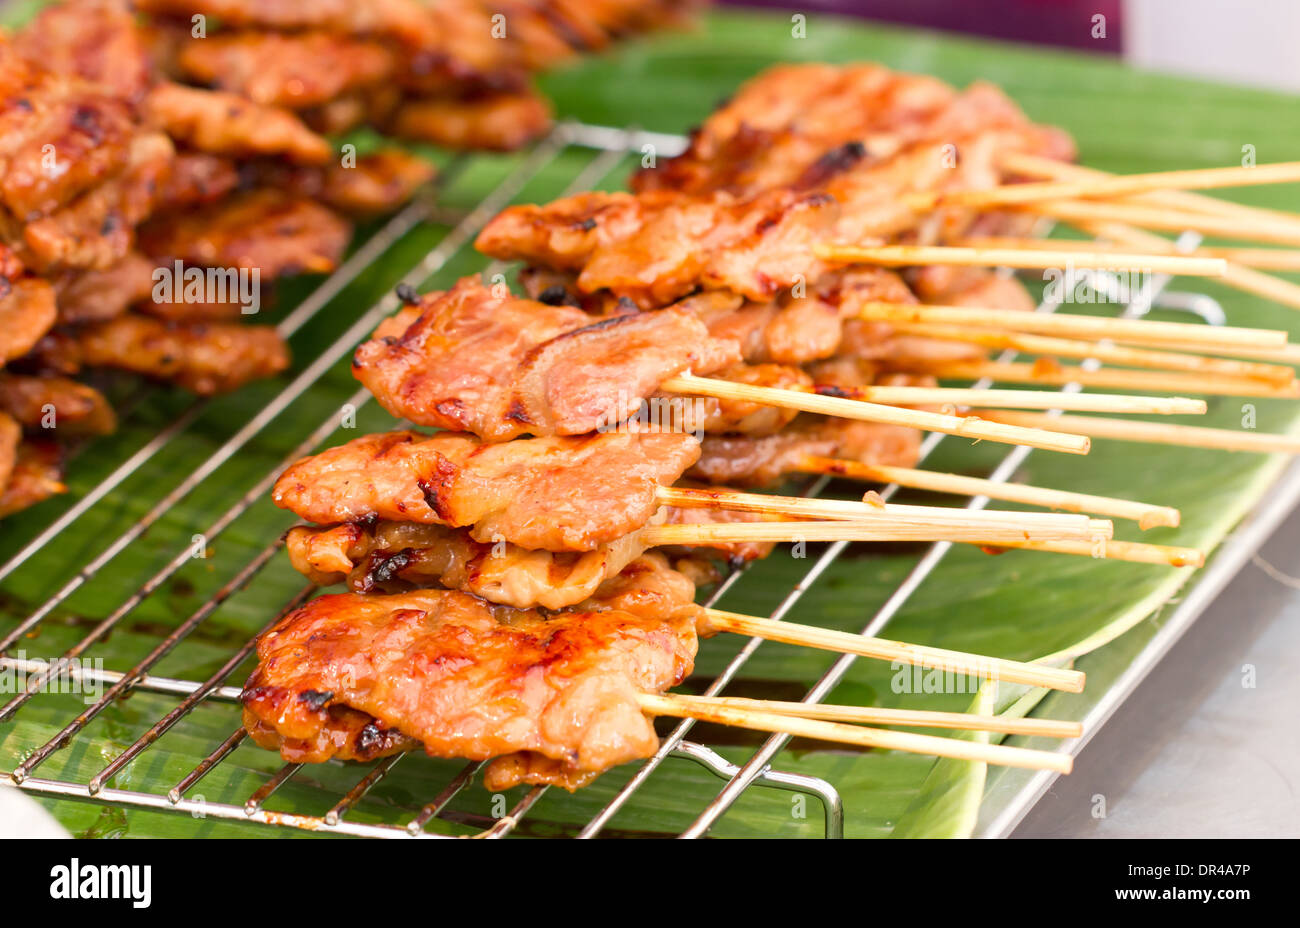 Thai style BBQ pork on metal sieve. Stock Photo